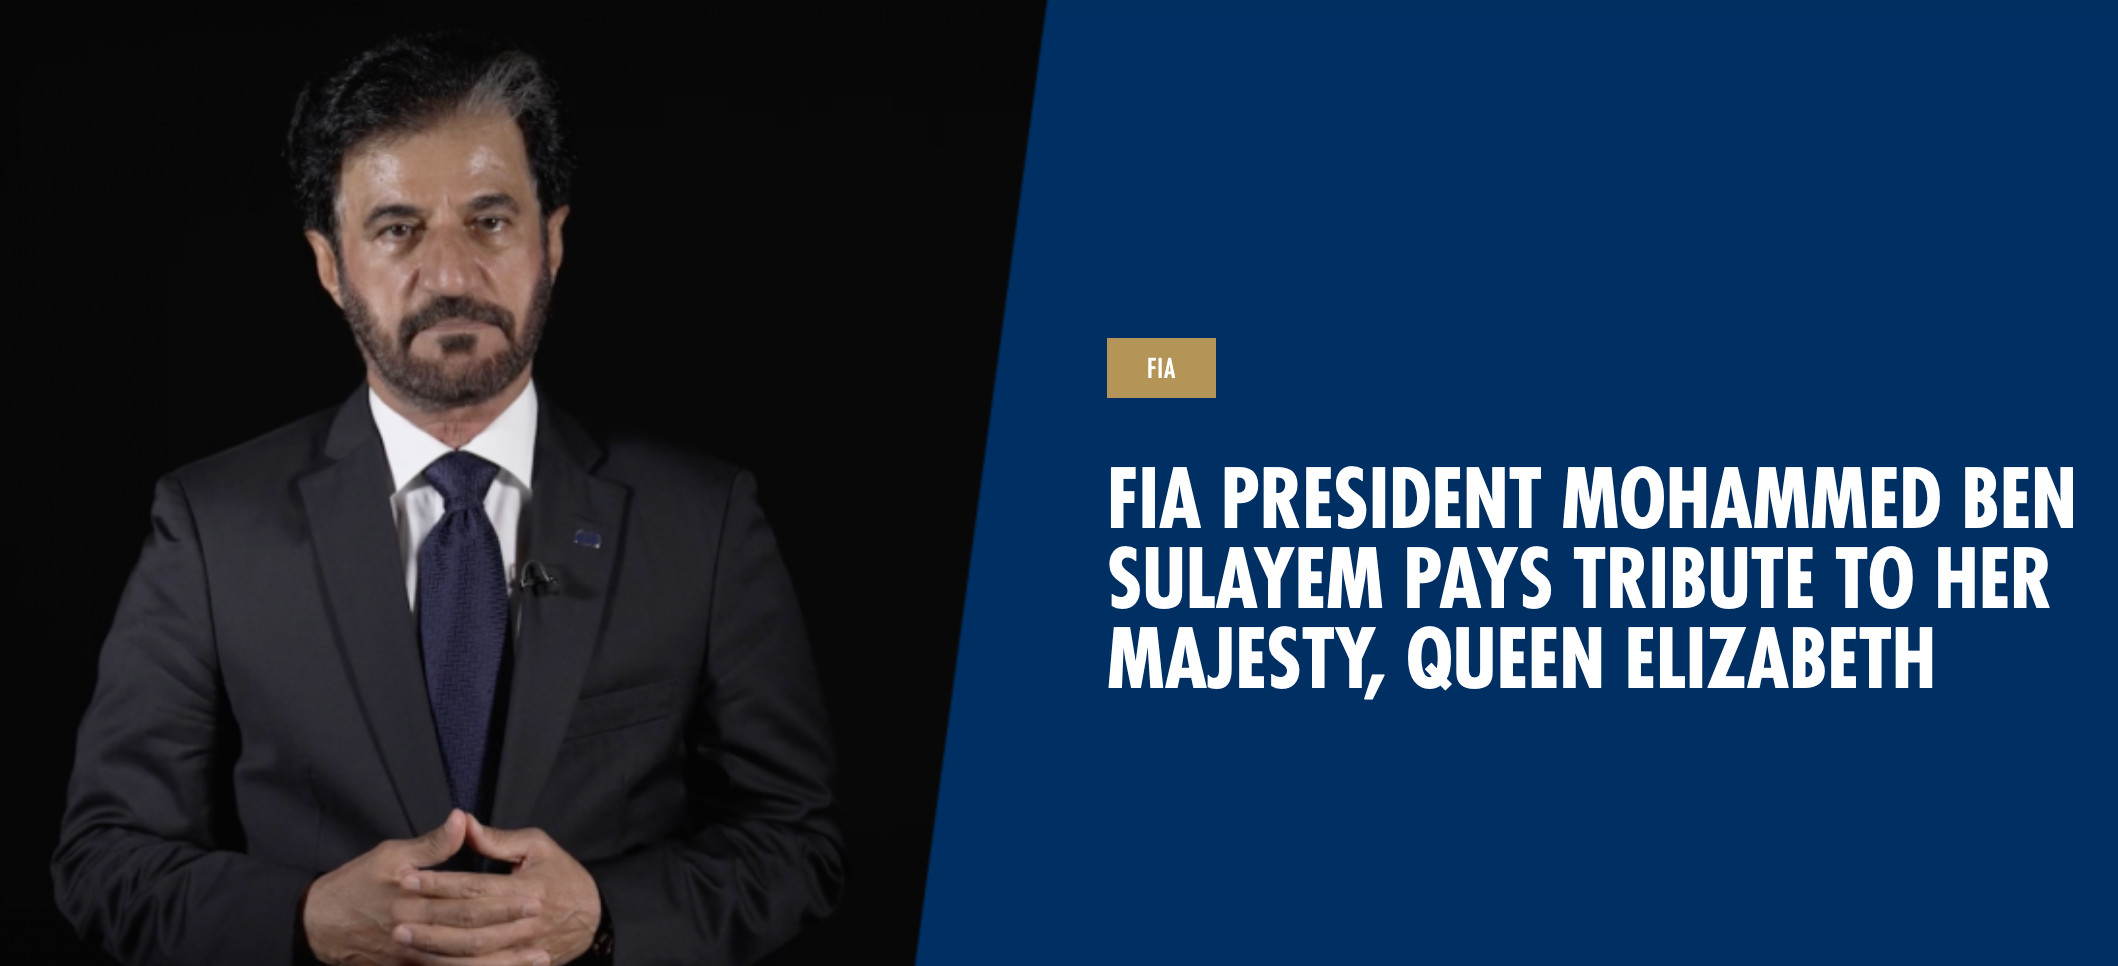 FIA-Banner mit Elizabeth-Huldigung des FIA-Präsidenten Mohammed Ben Sulayem, 2022 